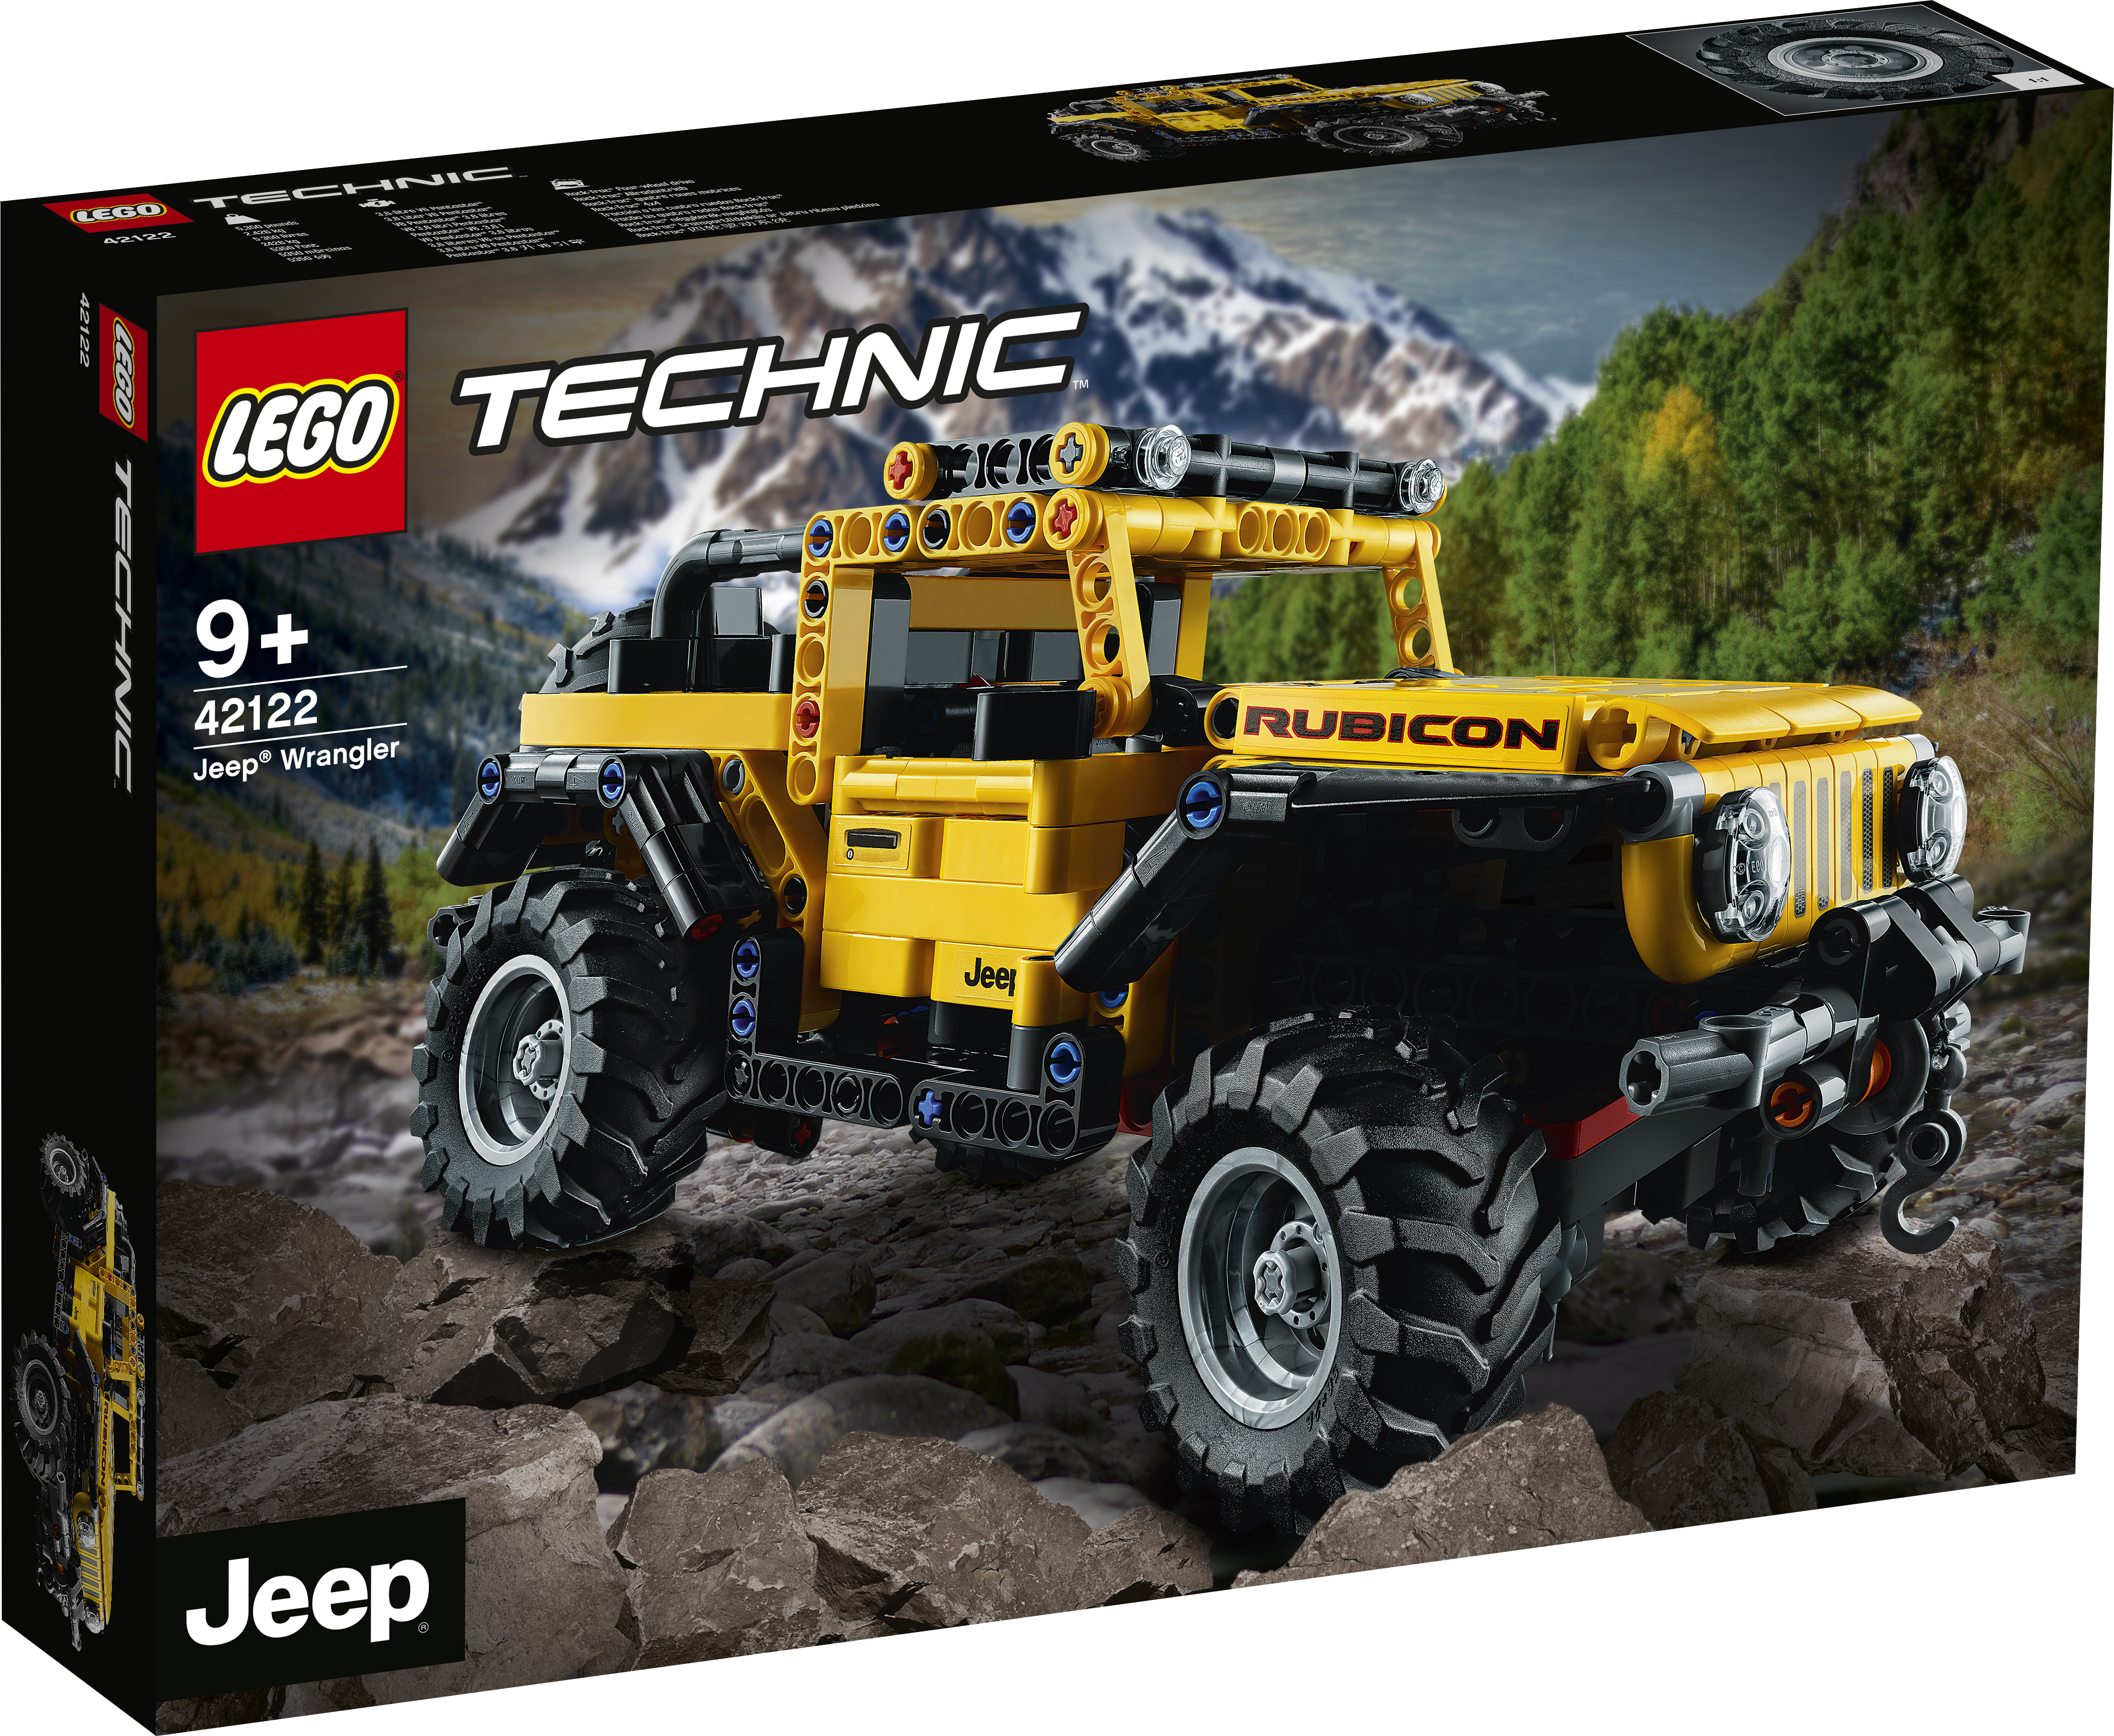  Technic Jeep Wrangler - 42122